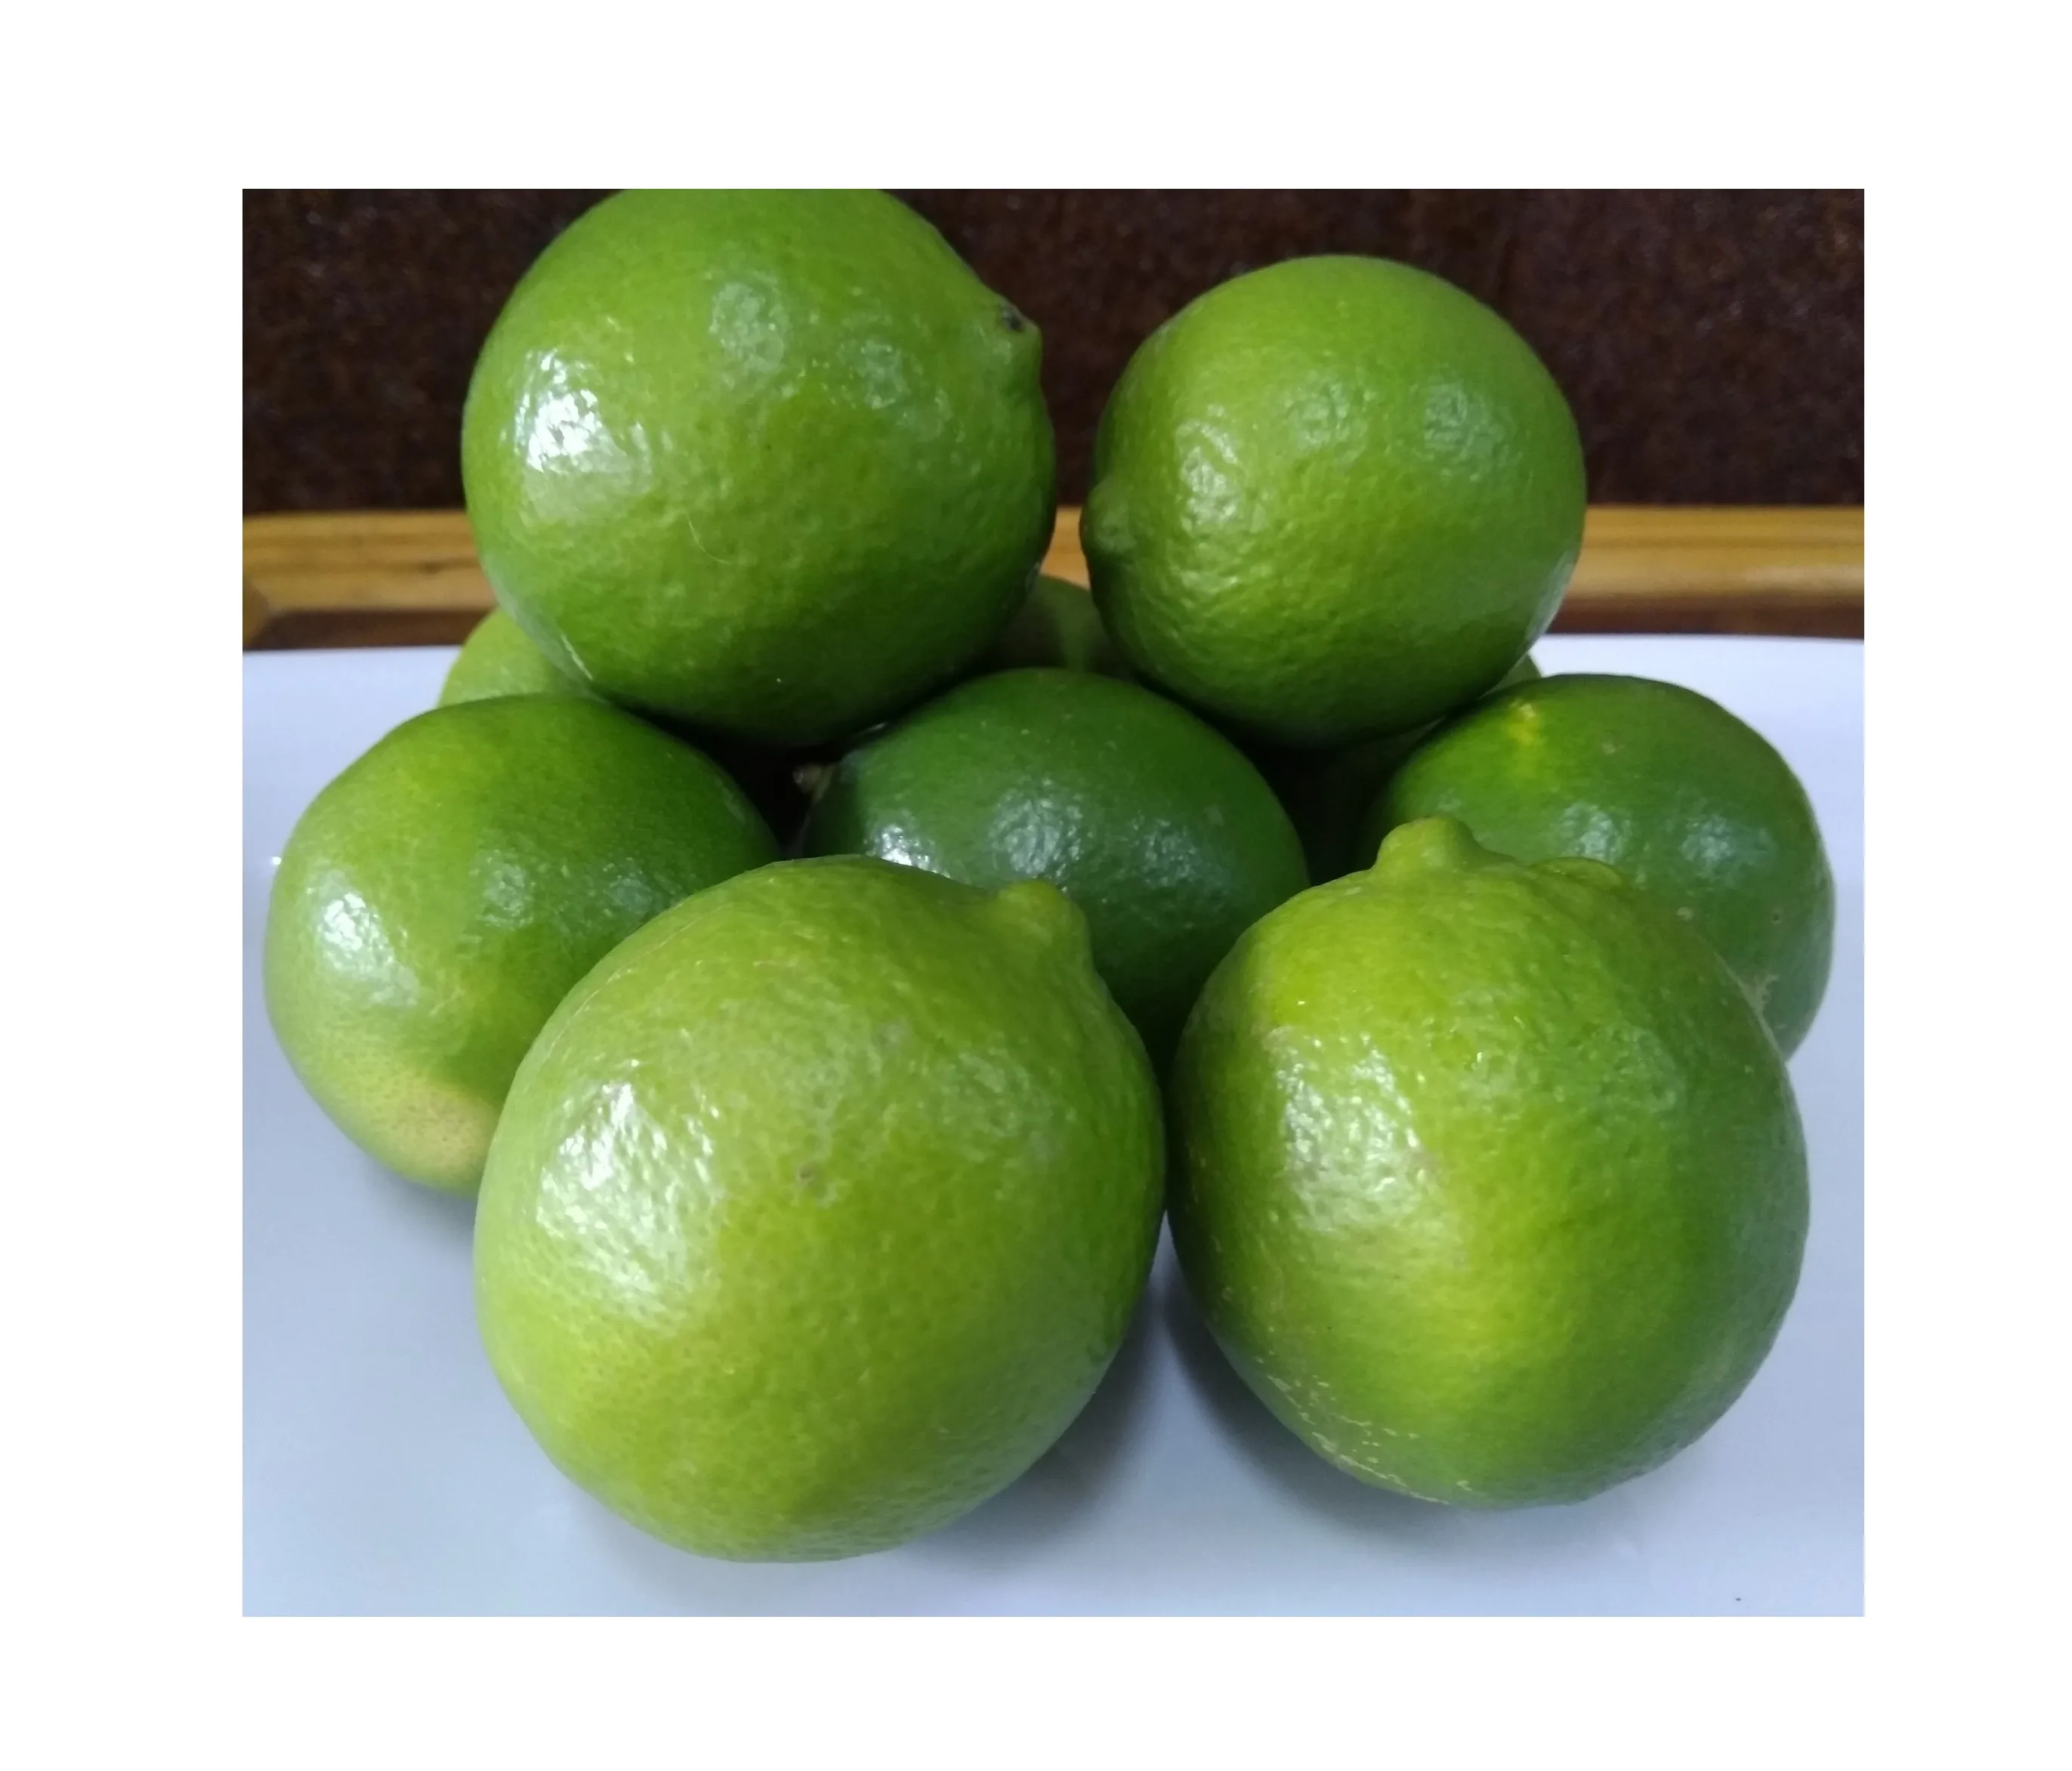 عالية الجودة و أفضل سعر الليمون/بدون بذور الجير/الفاكهة الطازجة